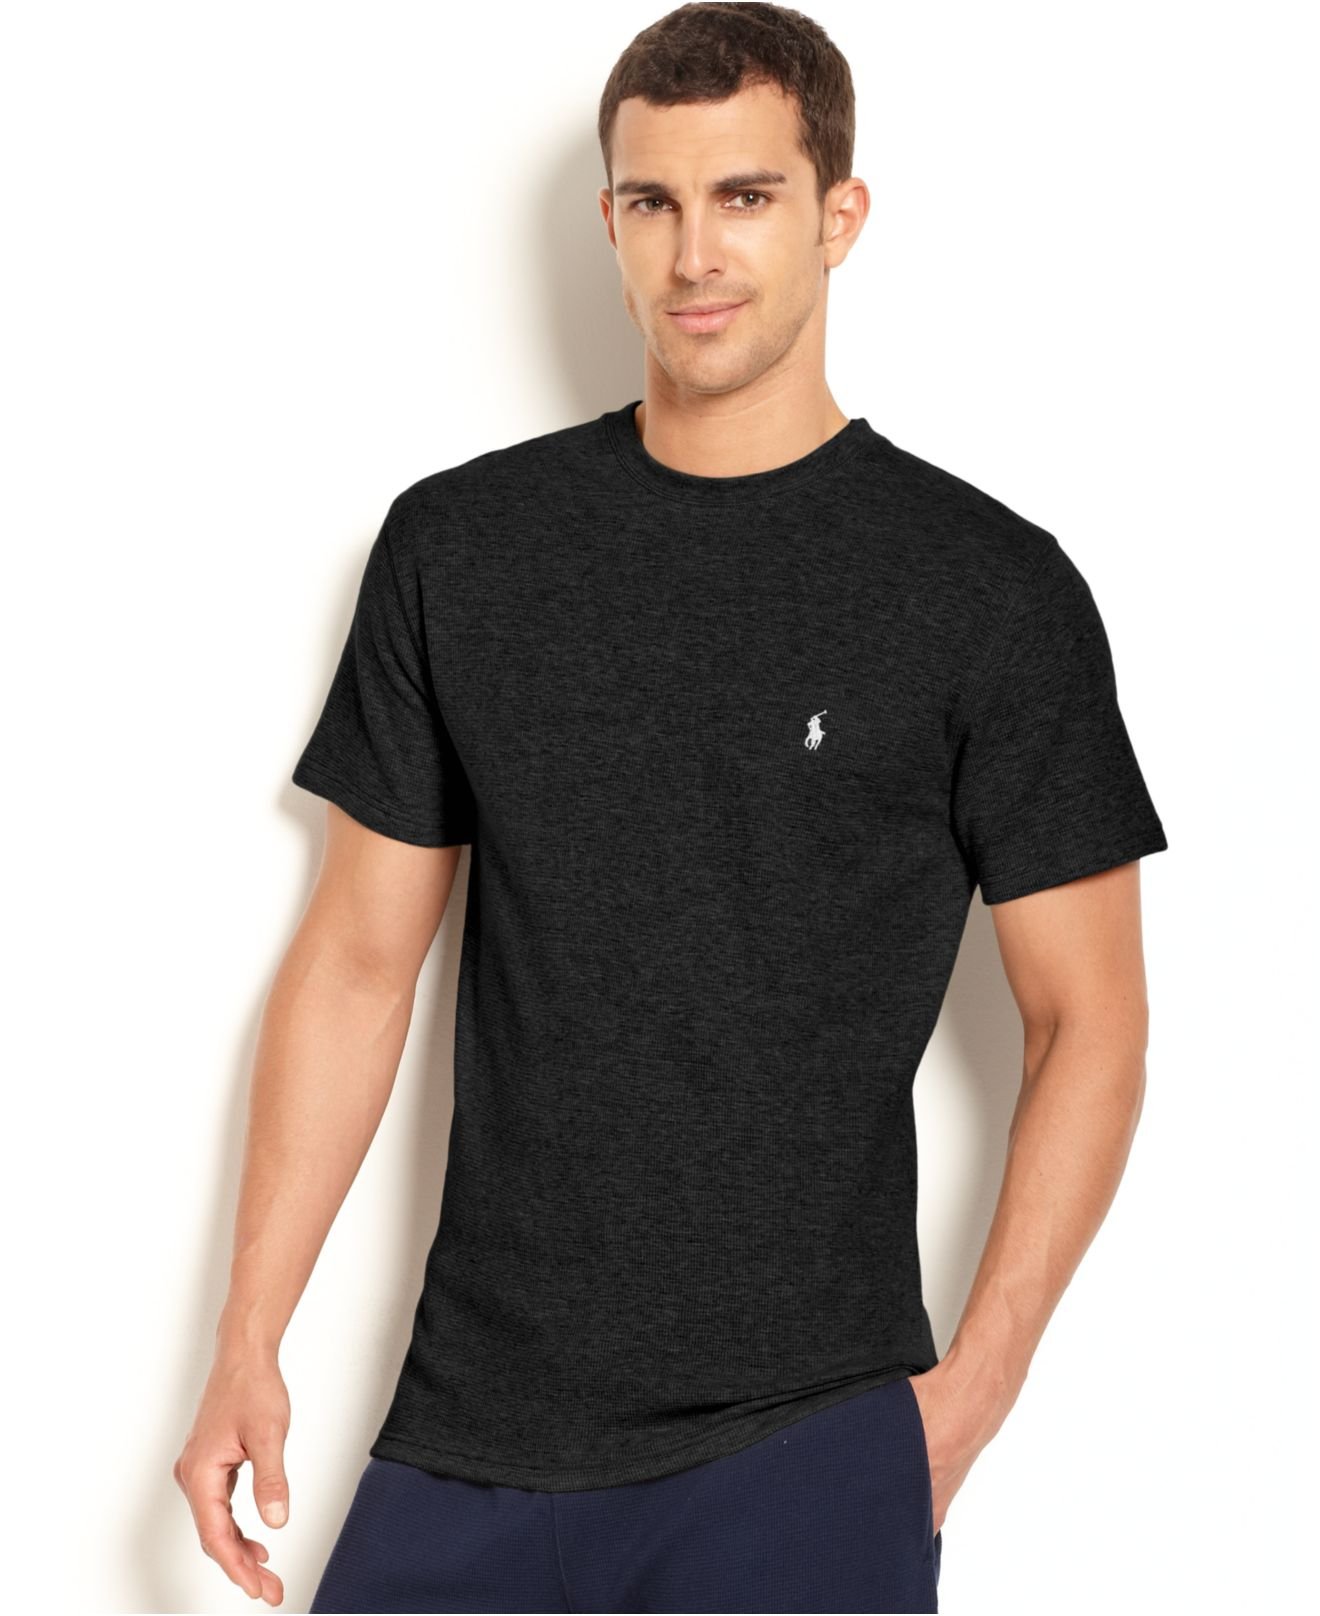 Aïe! 37+ Faits sur T Shirt Ralph Lauren: Ralph lauren long sleeve shirt comes in a khaki linen